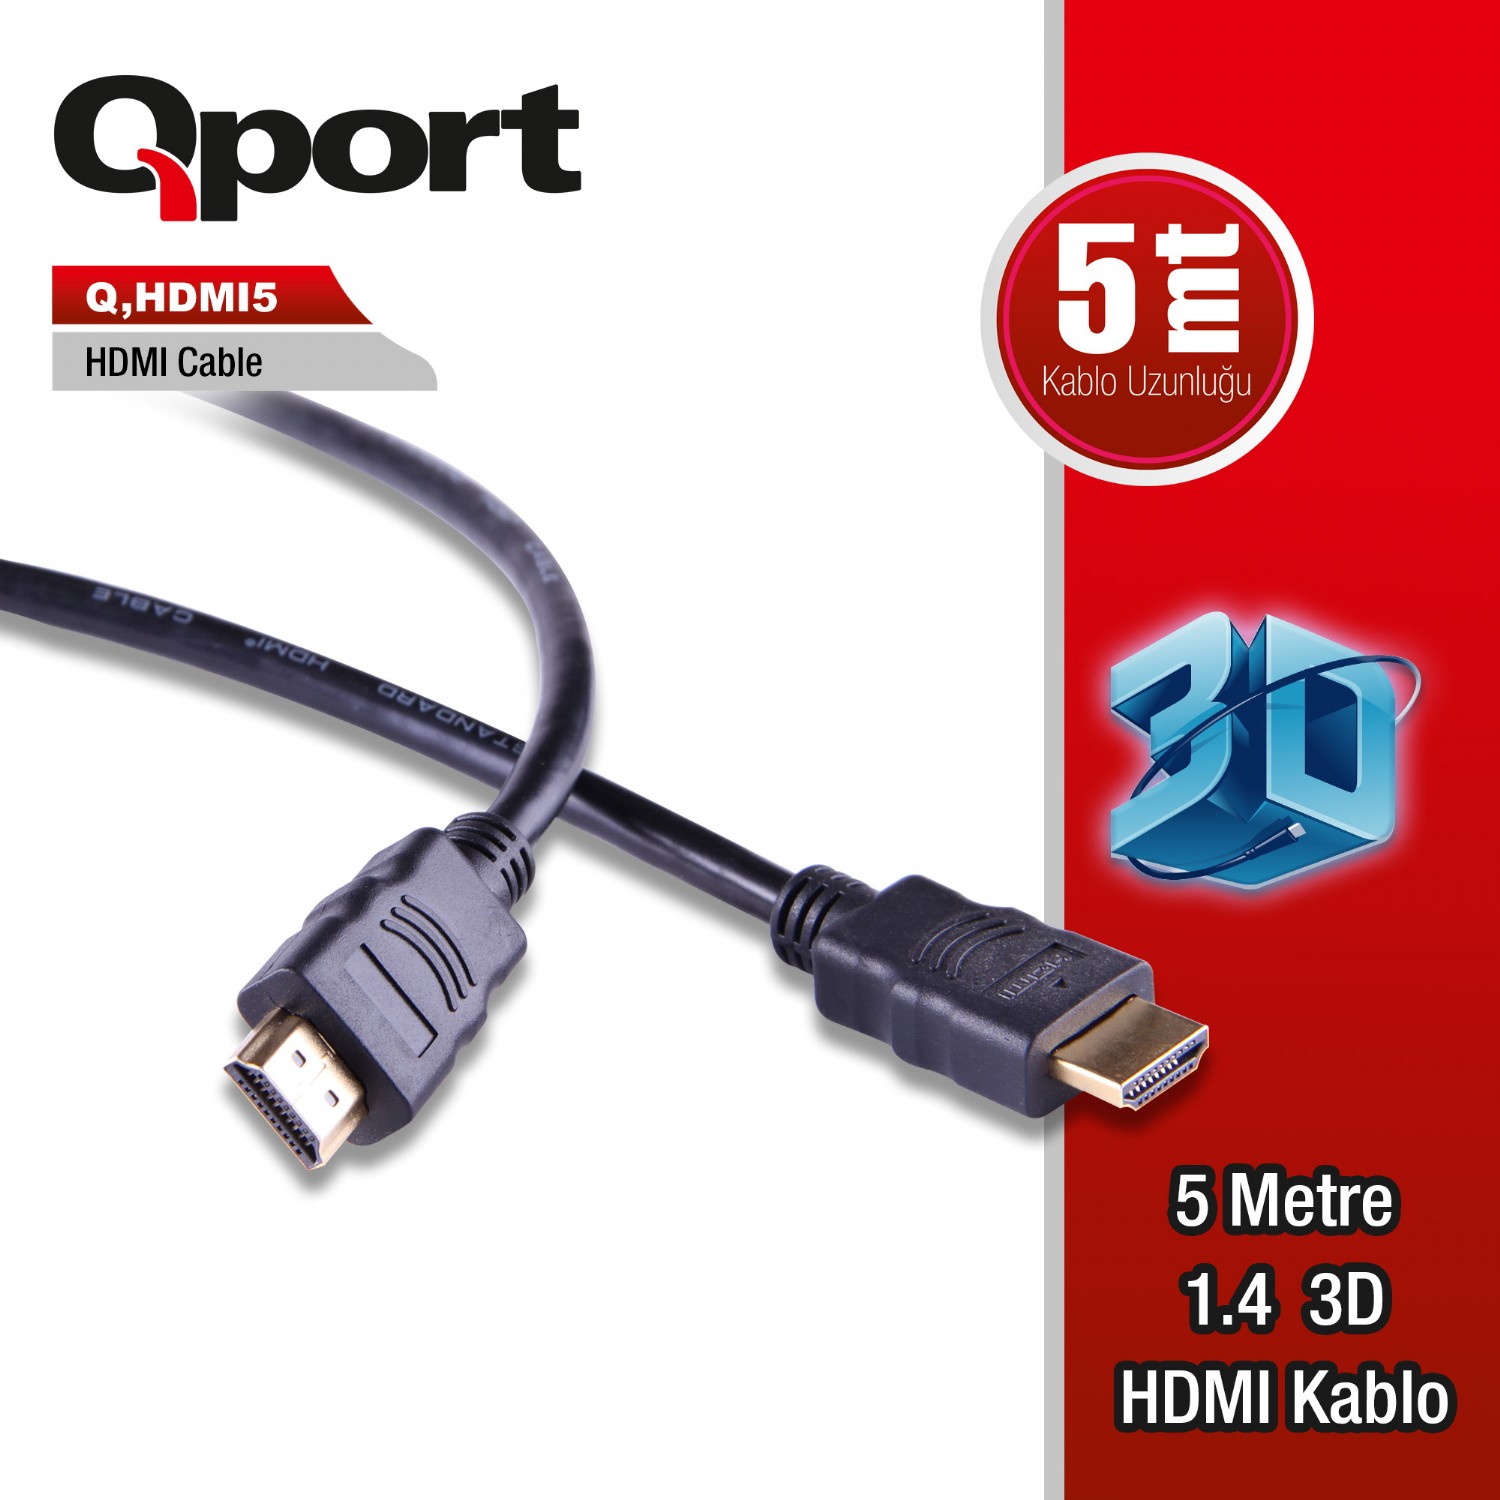 Q-HDMI5